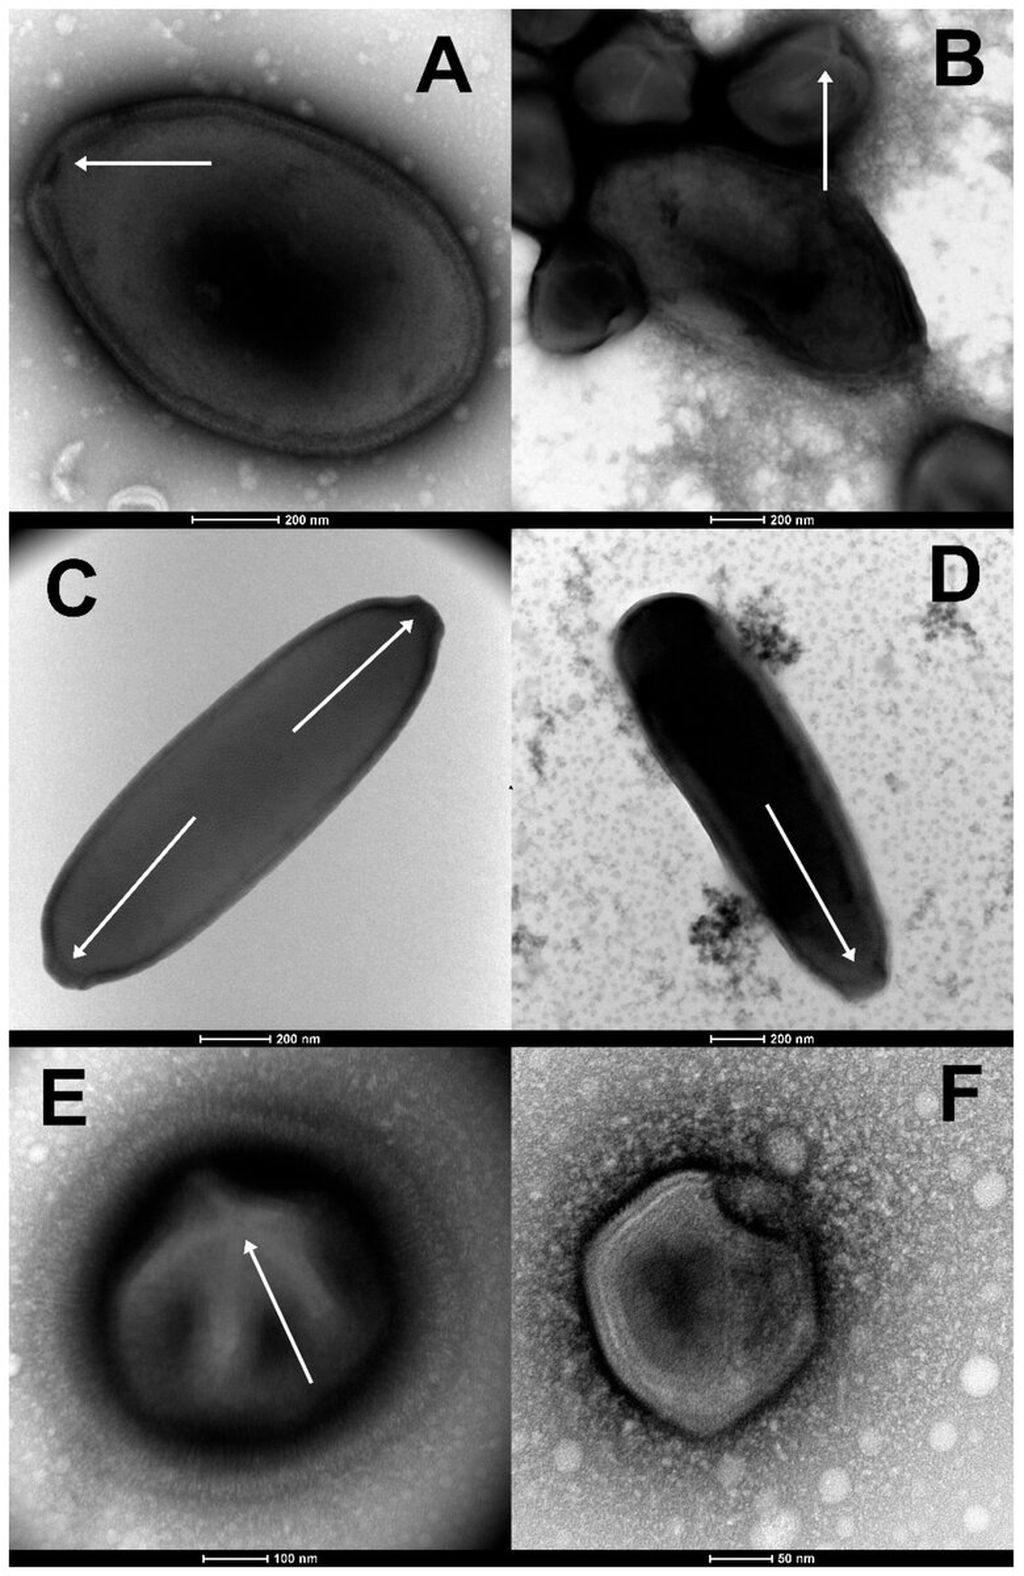 Fitur morfologi virus yang diisolasi dari lapisan tanah beku di Siberia (pewarnaan negatif, TEM). ( A ) Partikel ovoid besar (panjang 1.000 nm) dari Pandoravirus yedoma (strain Y2). (B) Campuran partikel oblate Pandoravirus mammoth (strain Yana14) dan megavirus mammoth (strain Yana14). (C) Partikel Cedratvirus lena yang memanjang (strain DY0) (panjangnya 1.500 nm) menunjukkan dua struktur seperti gabus apeks (panah putih). (D) Partikel memanjang dari mammoth Pithovirus (panjang 1.800 nm) menunjukkan struktur seperti gabus apeks tunggal (panah putih). (E) Partikel ikosahedral berbulu besar (berdiameter 770 nm) dari Megavirus mammoth (strain Yana14), menunjukkan karakteristik <i>stargate</i> (mata panah putih) dari subfamili Megavirinae. (F) Partikel icosahedral yang lebih kecil (berdiameter 200 nm) dari Pacmanvirus lupus (strain Tums2) tipikal dari asfarvirus/pacmanvirus. Kredit: Jurnal Viruses (2023).